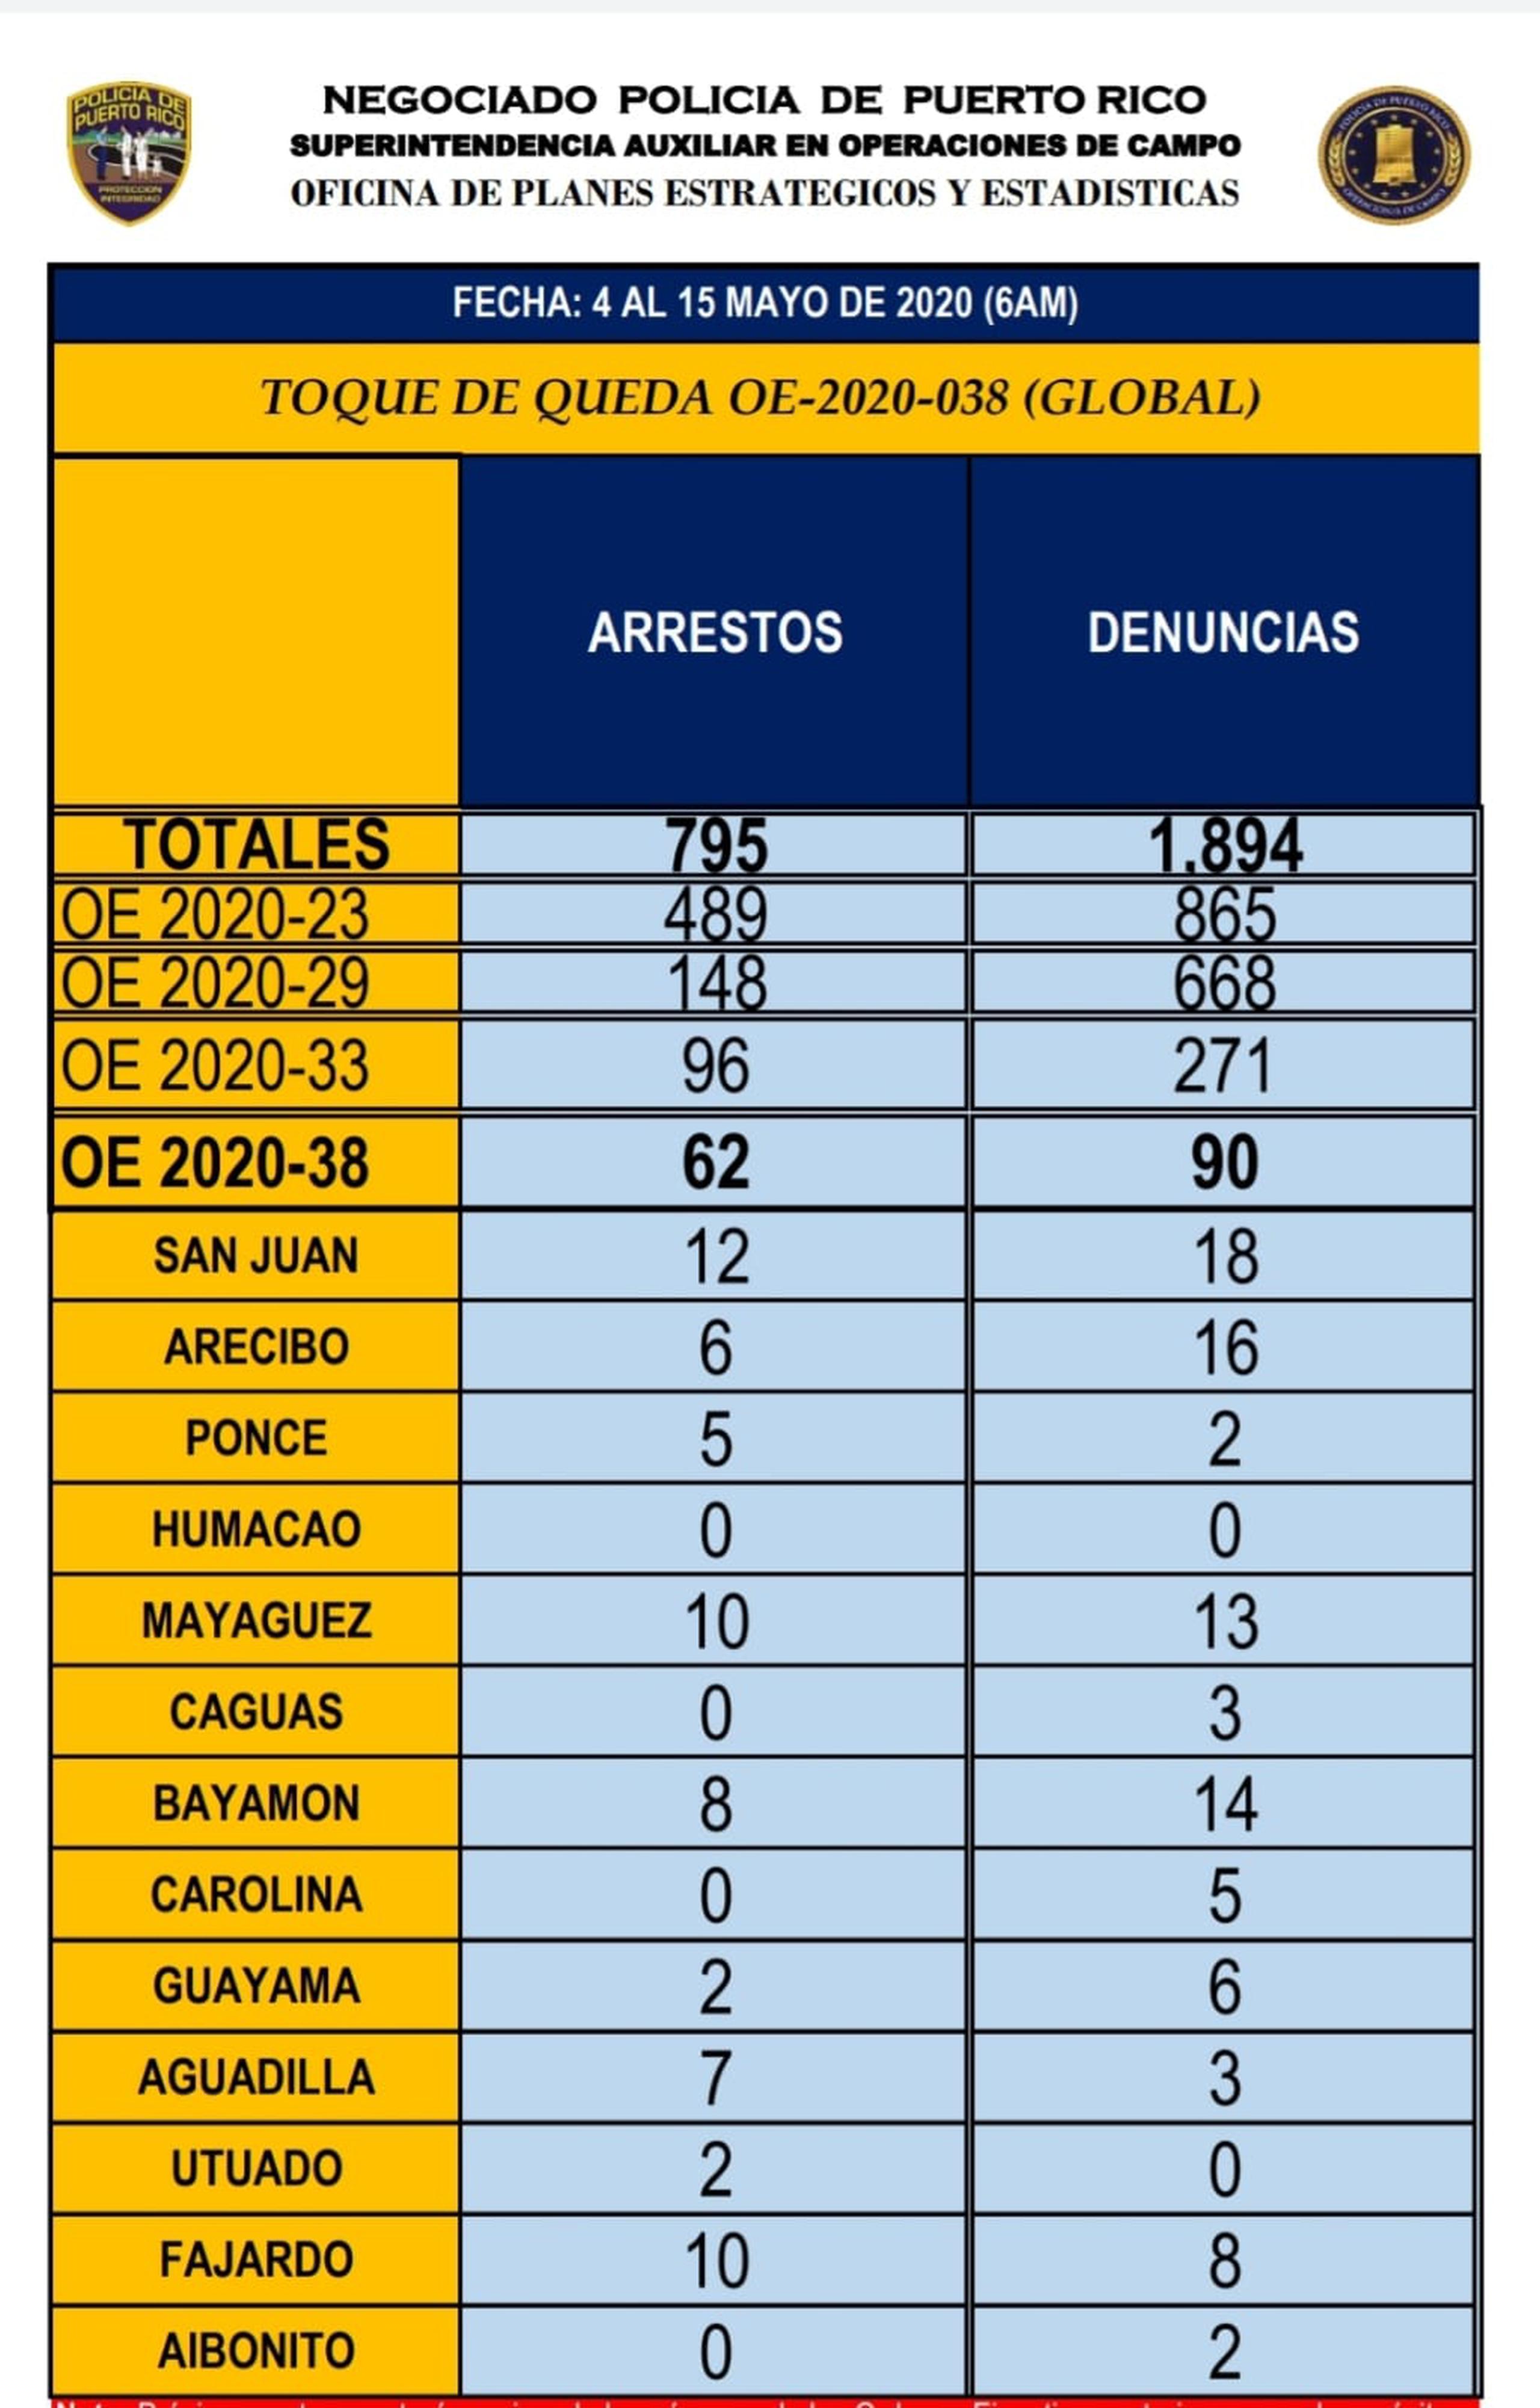 Desde que se estableció el toque de queda el 15 de marzo, el Negociado de la Policía de Puerto Rico ha arrestado a 795 personas y denunciado a 1,894 por violación a las órdenes ejecutivas.